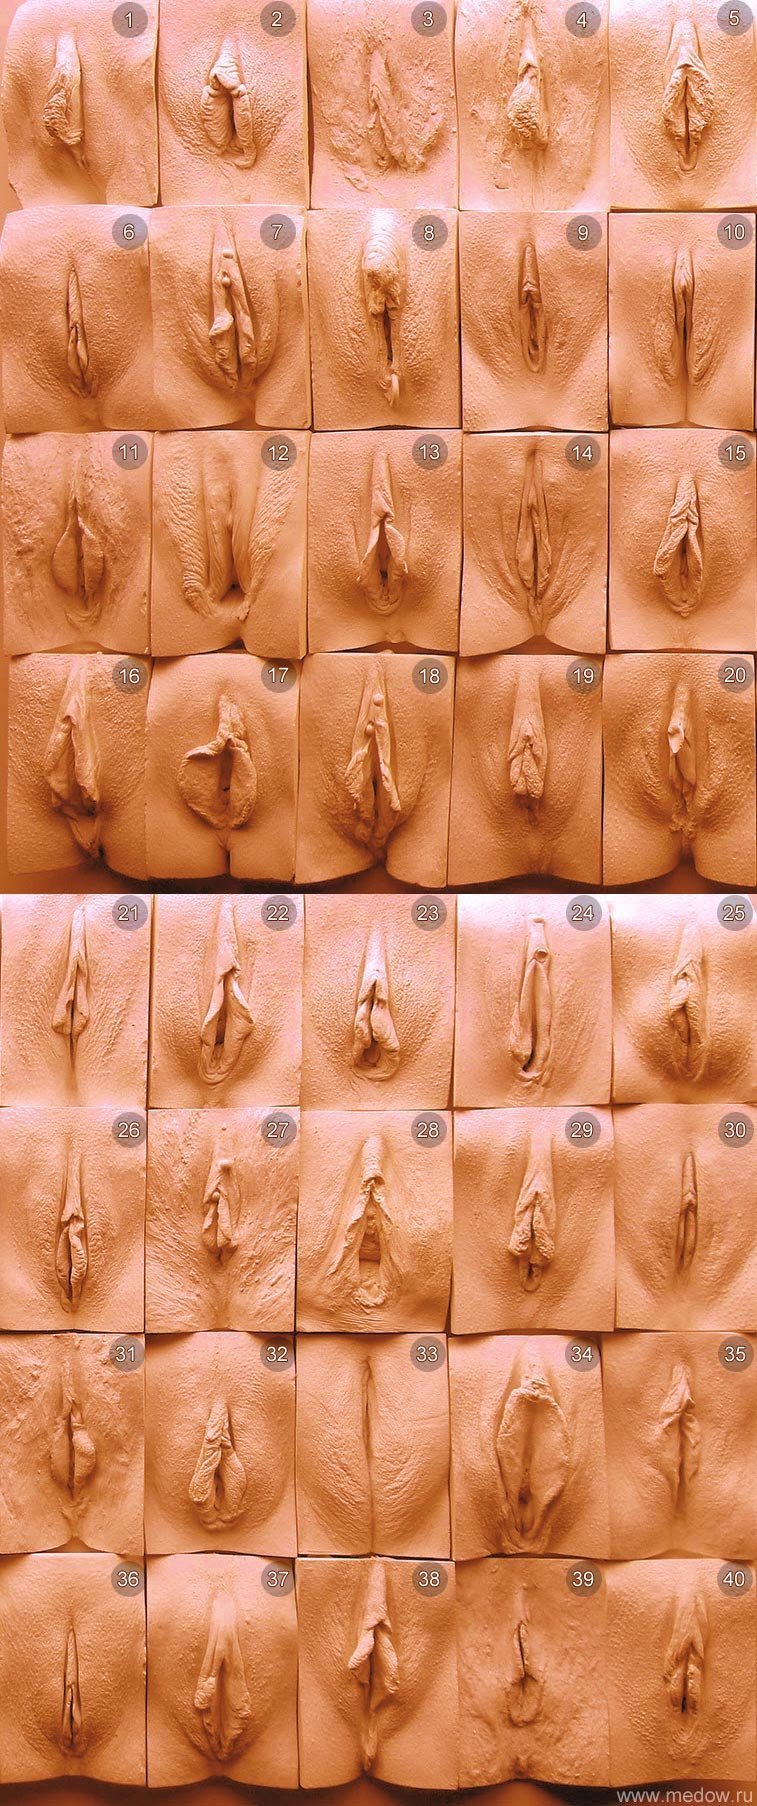 Классификация пизды » Порно фото бесплатно, без регистрации и смс